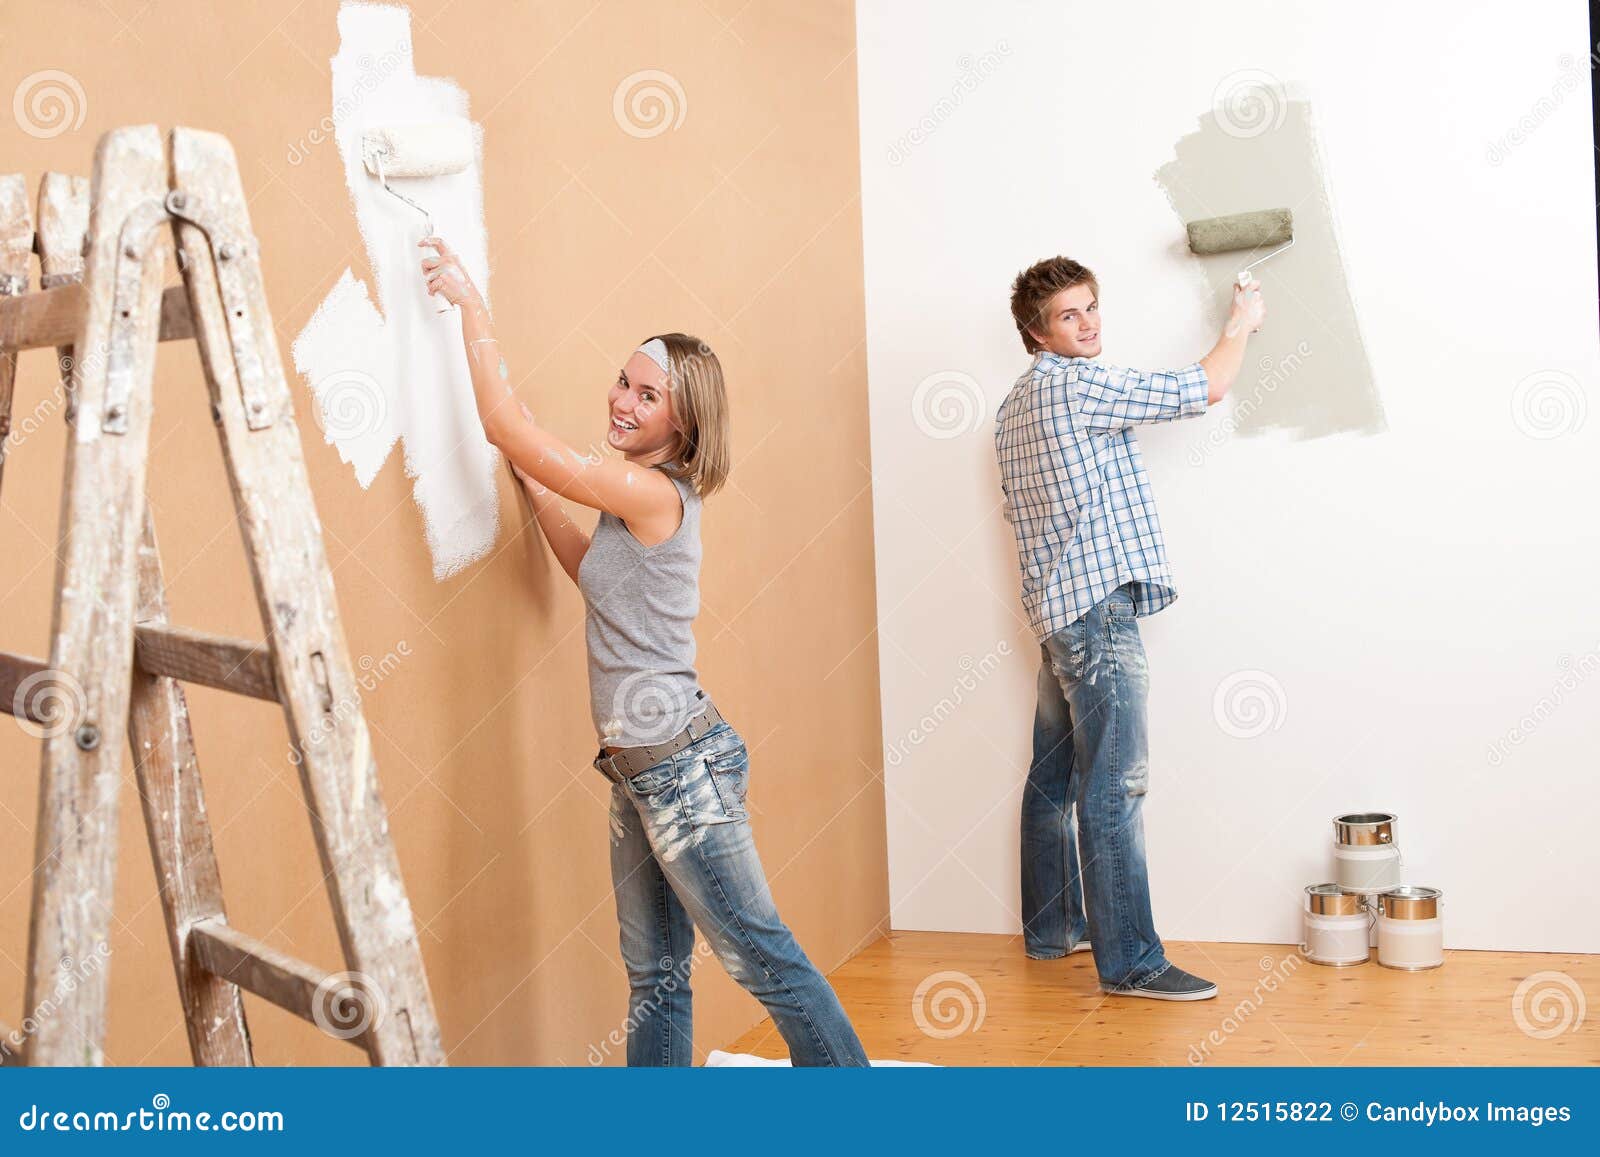 Мужчина и женщина красят стены